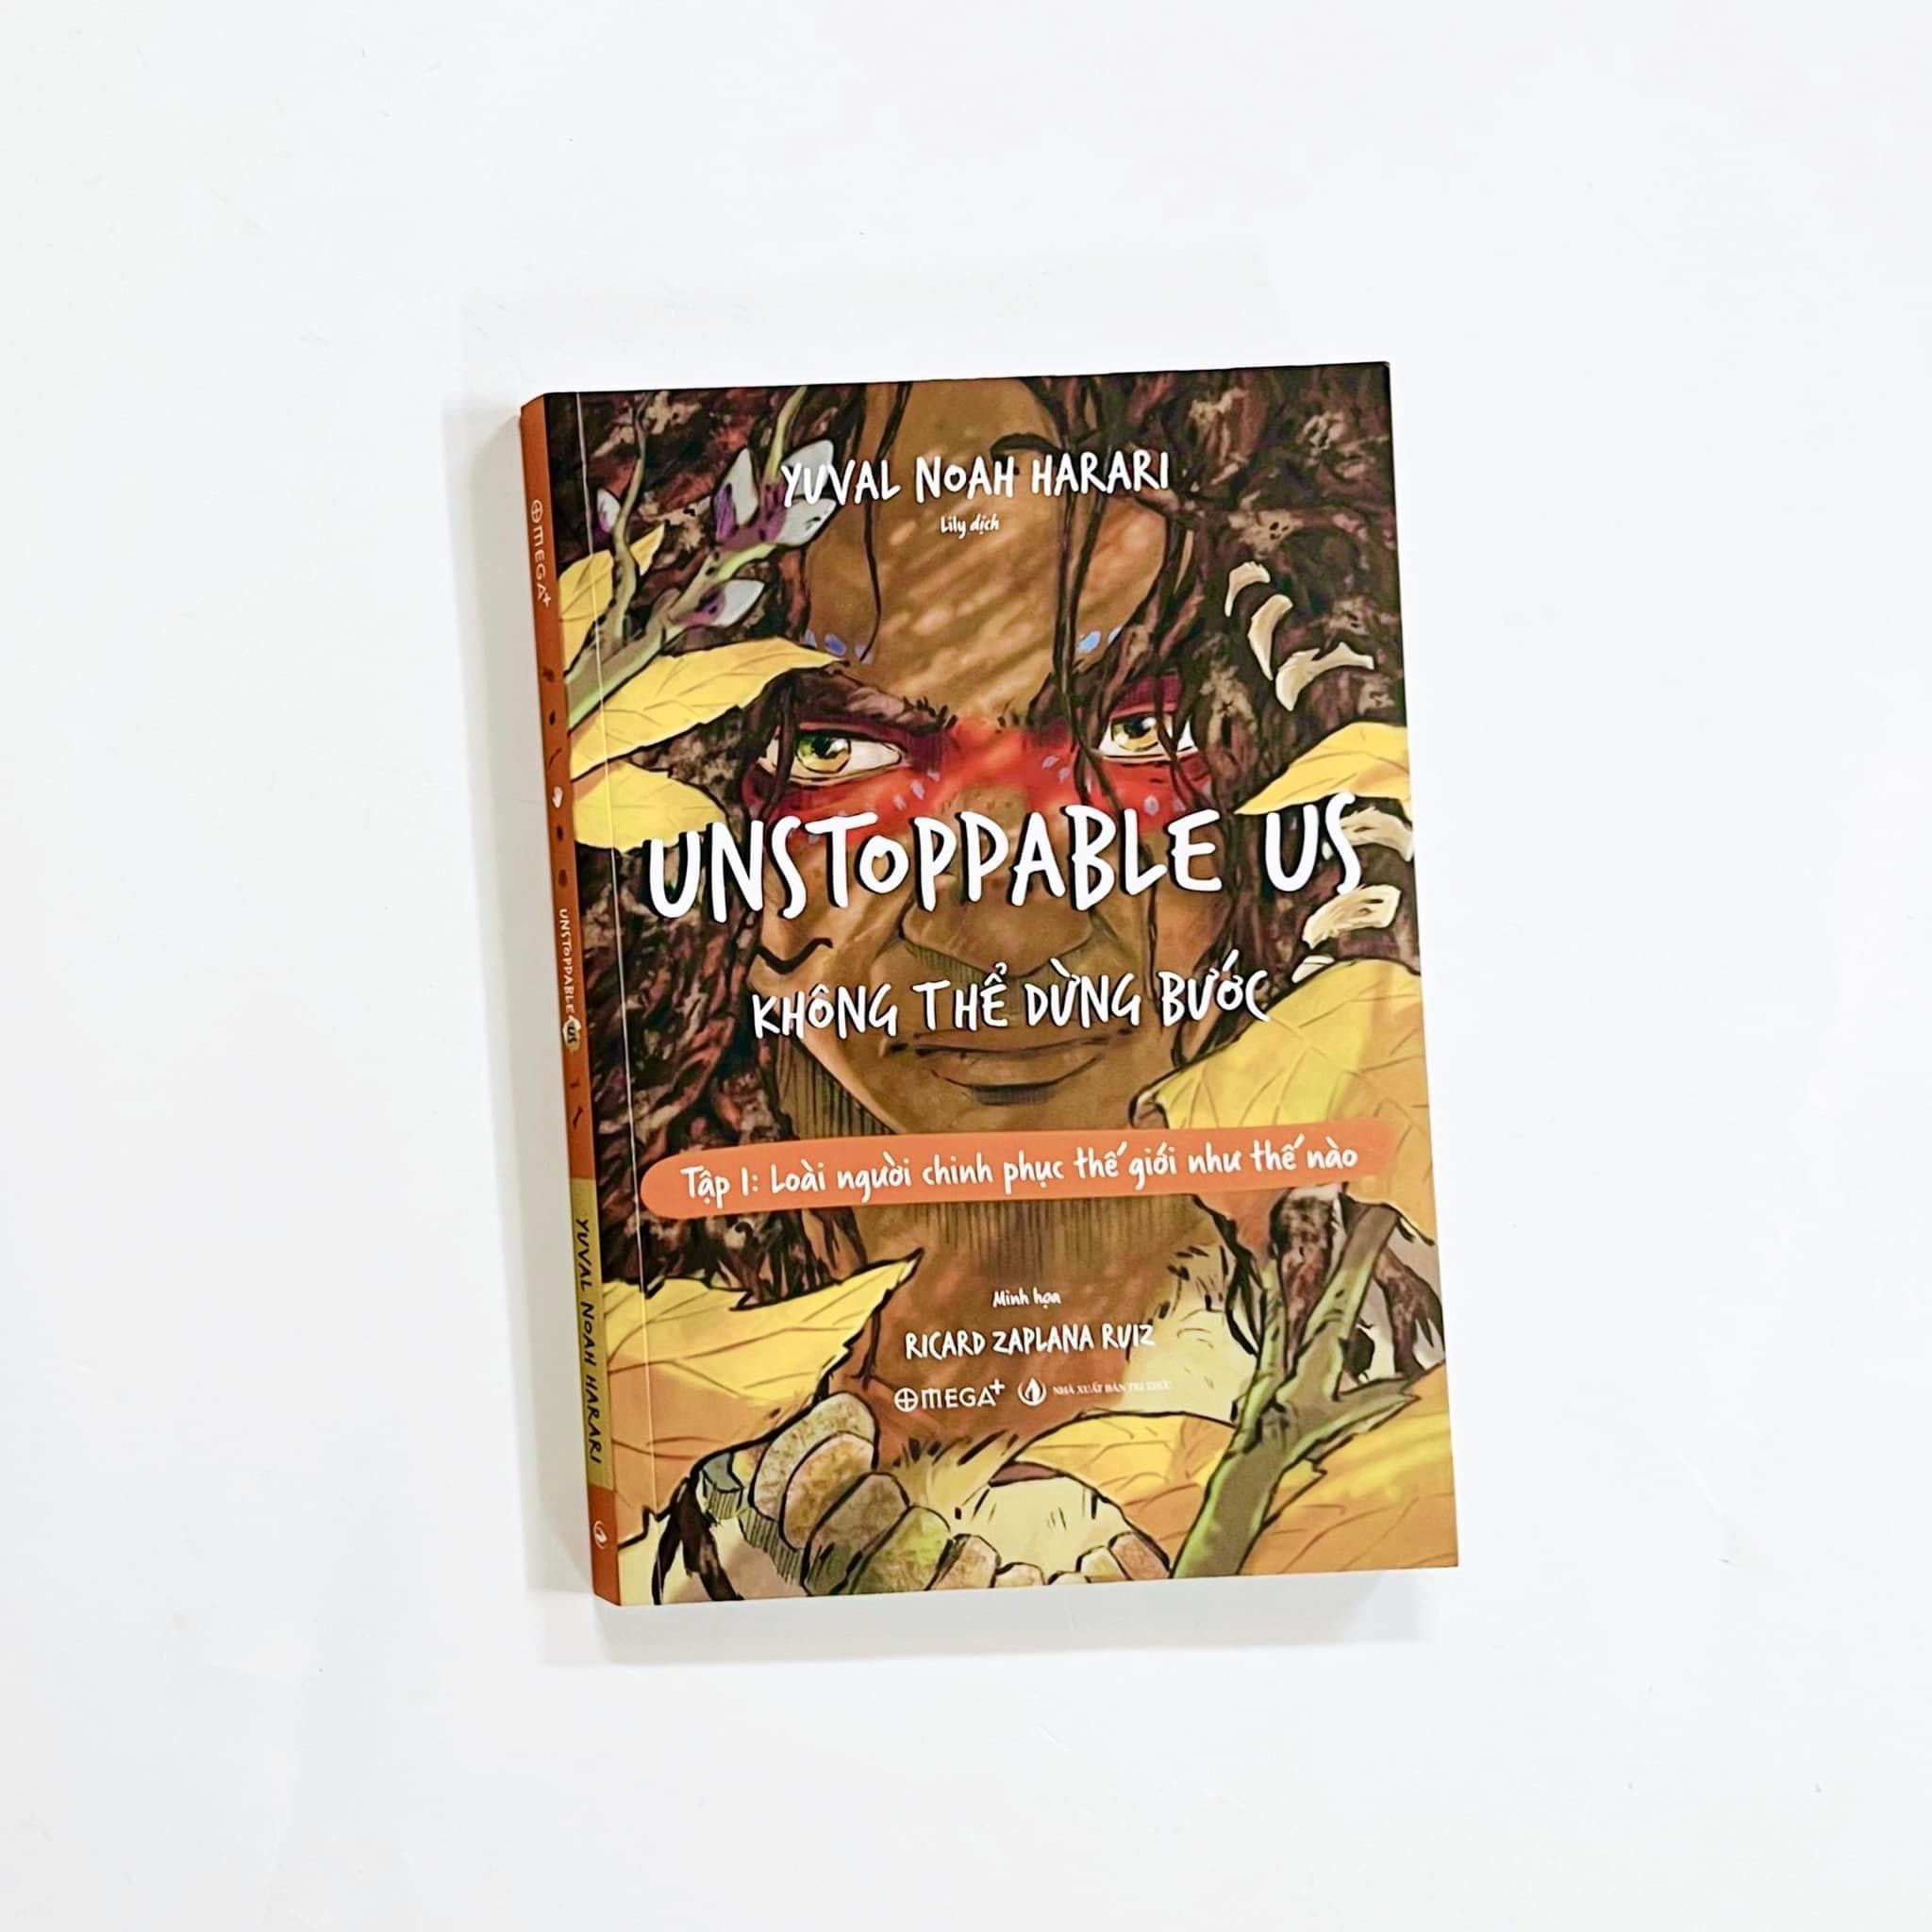 (Minh hoạ màu) UNSTOPPABLE US KHÔNG THỂ DỪNG BƯỚC - Tập 1: Loài người chinh phục thế giới như thế nào - Yuval Noah Harari – Ricard Zaplana Ruiz minh hoạ - Lily dịch – Omegaplus (Bìa mềm)